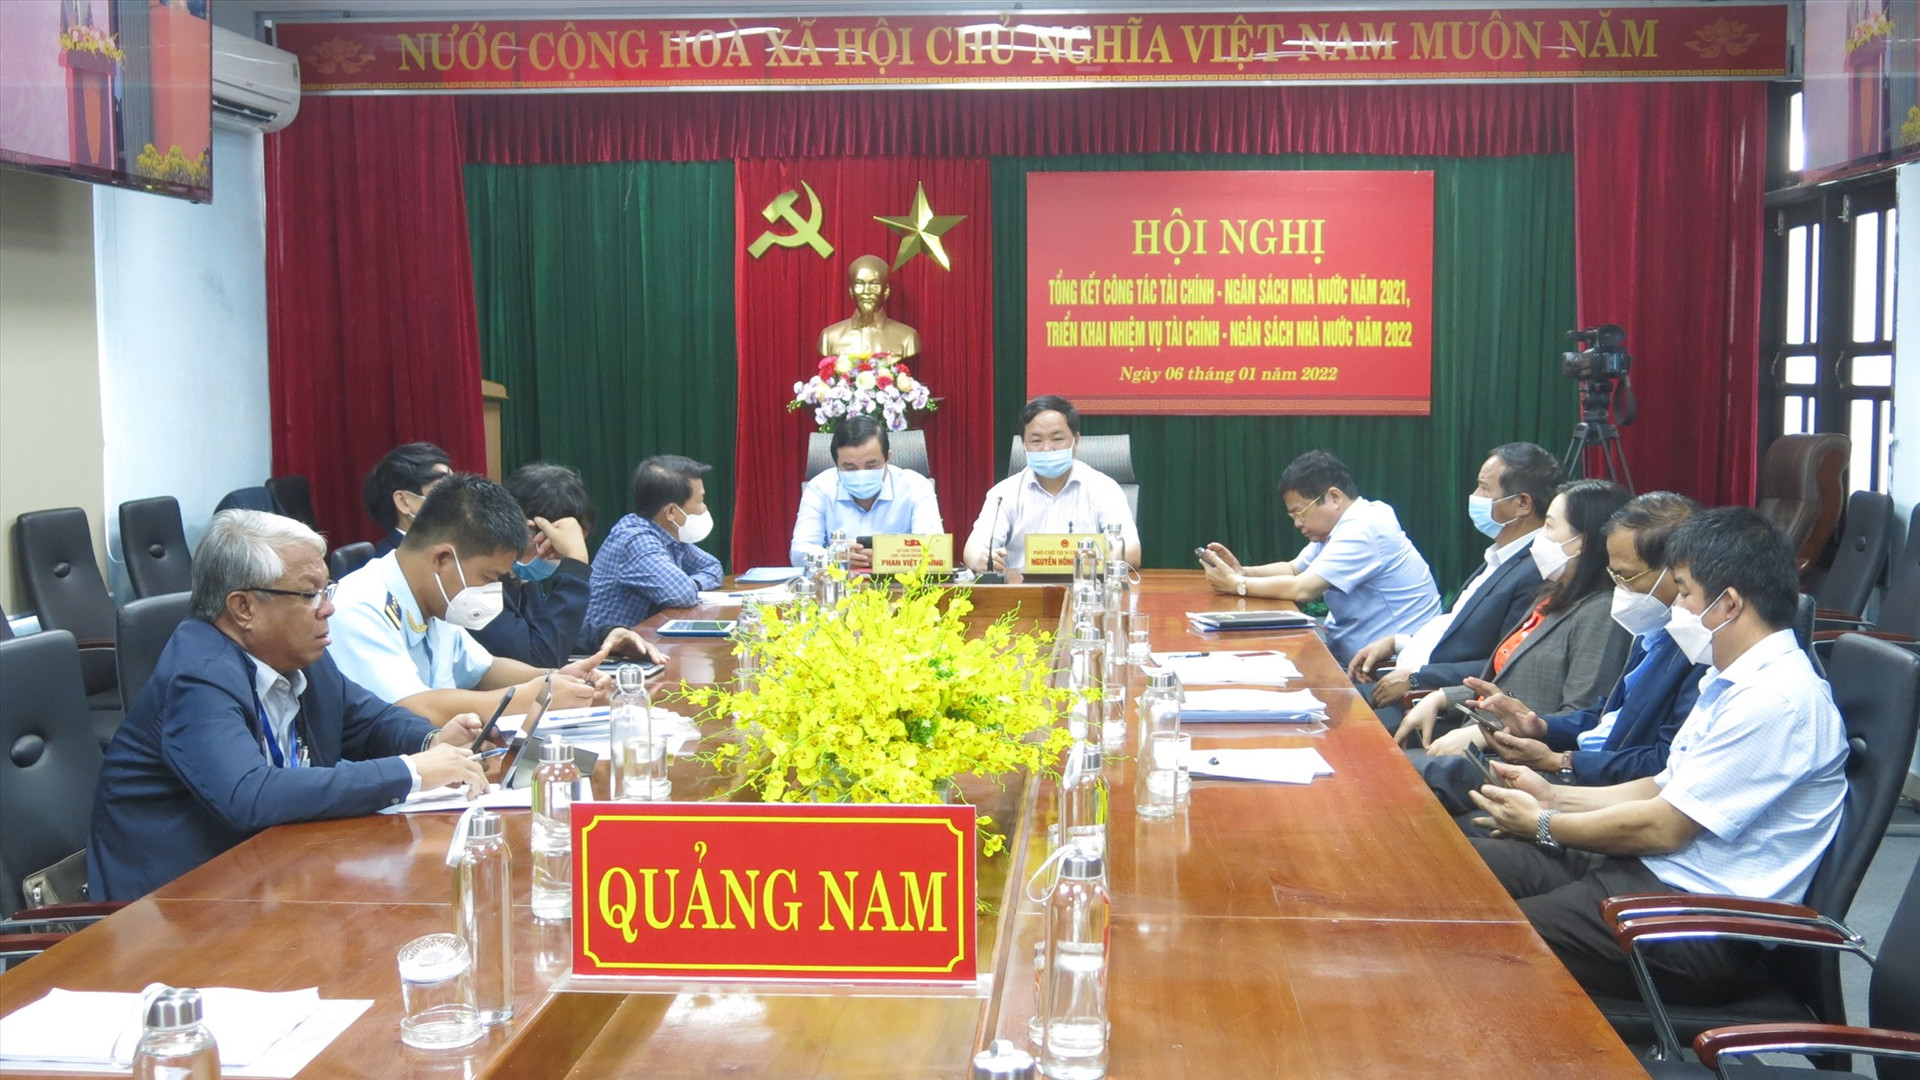 Đầu cầu phiên họp trực tuyến Quảng Nam